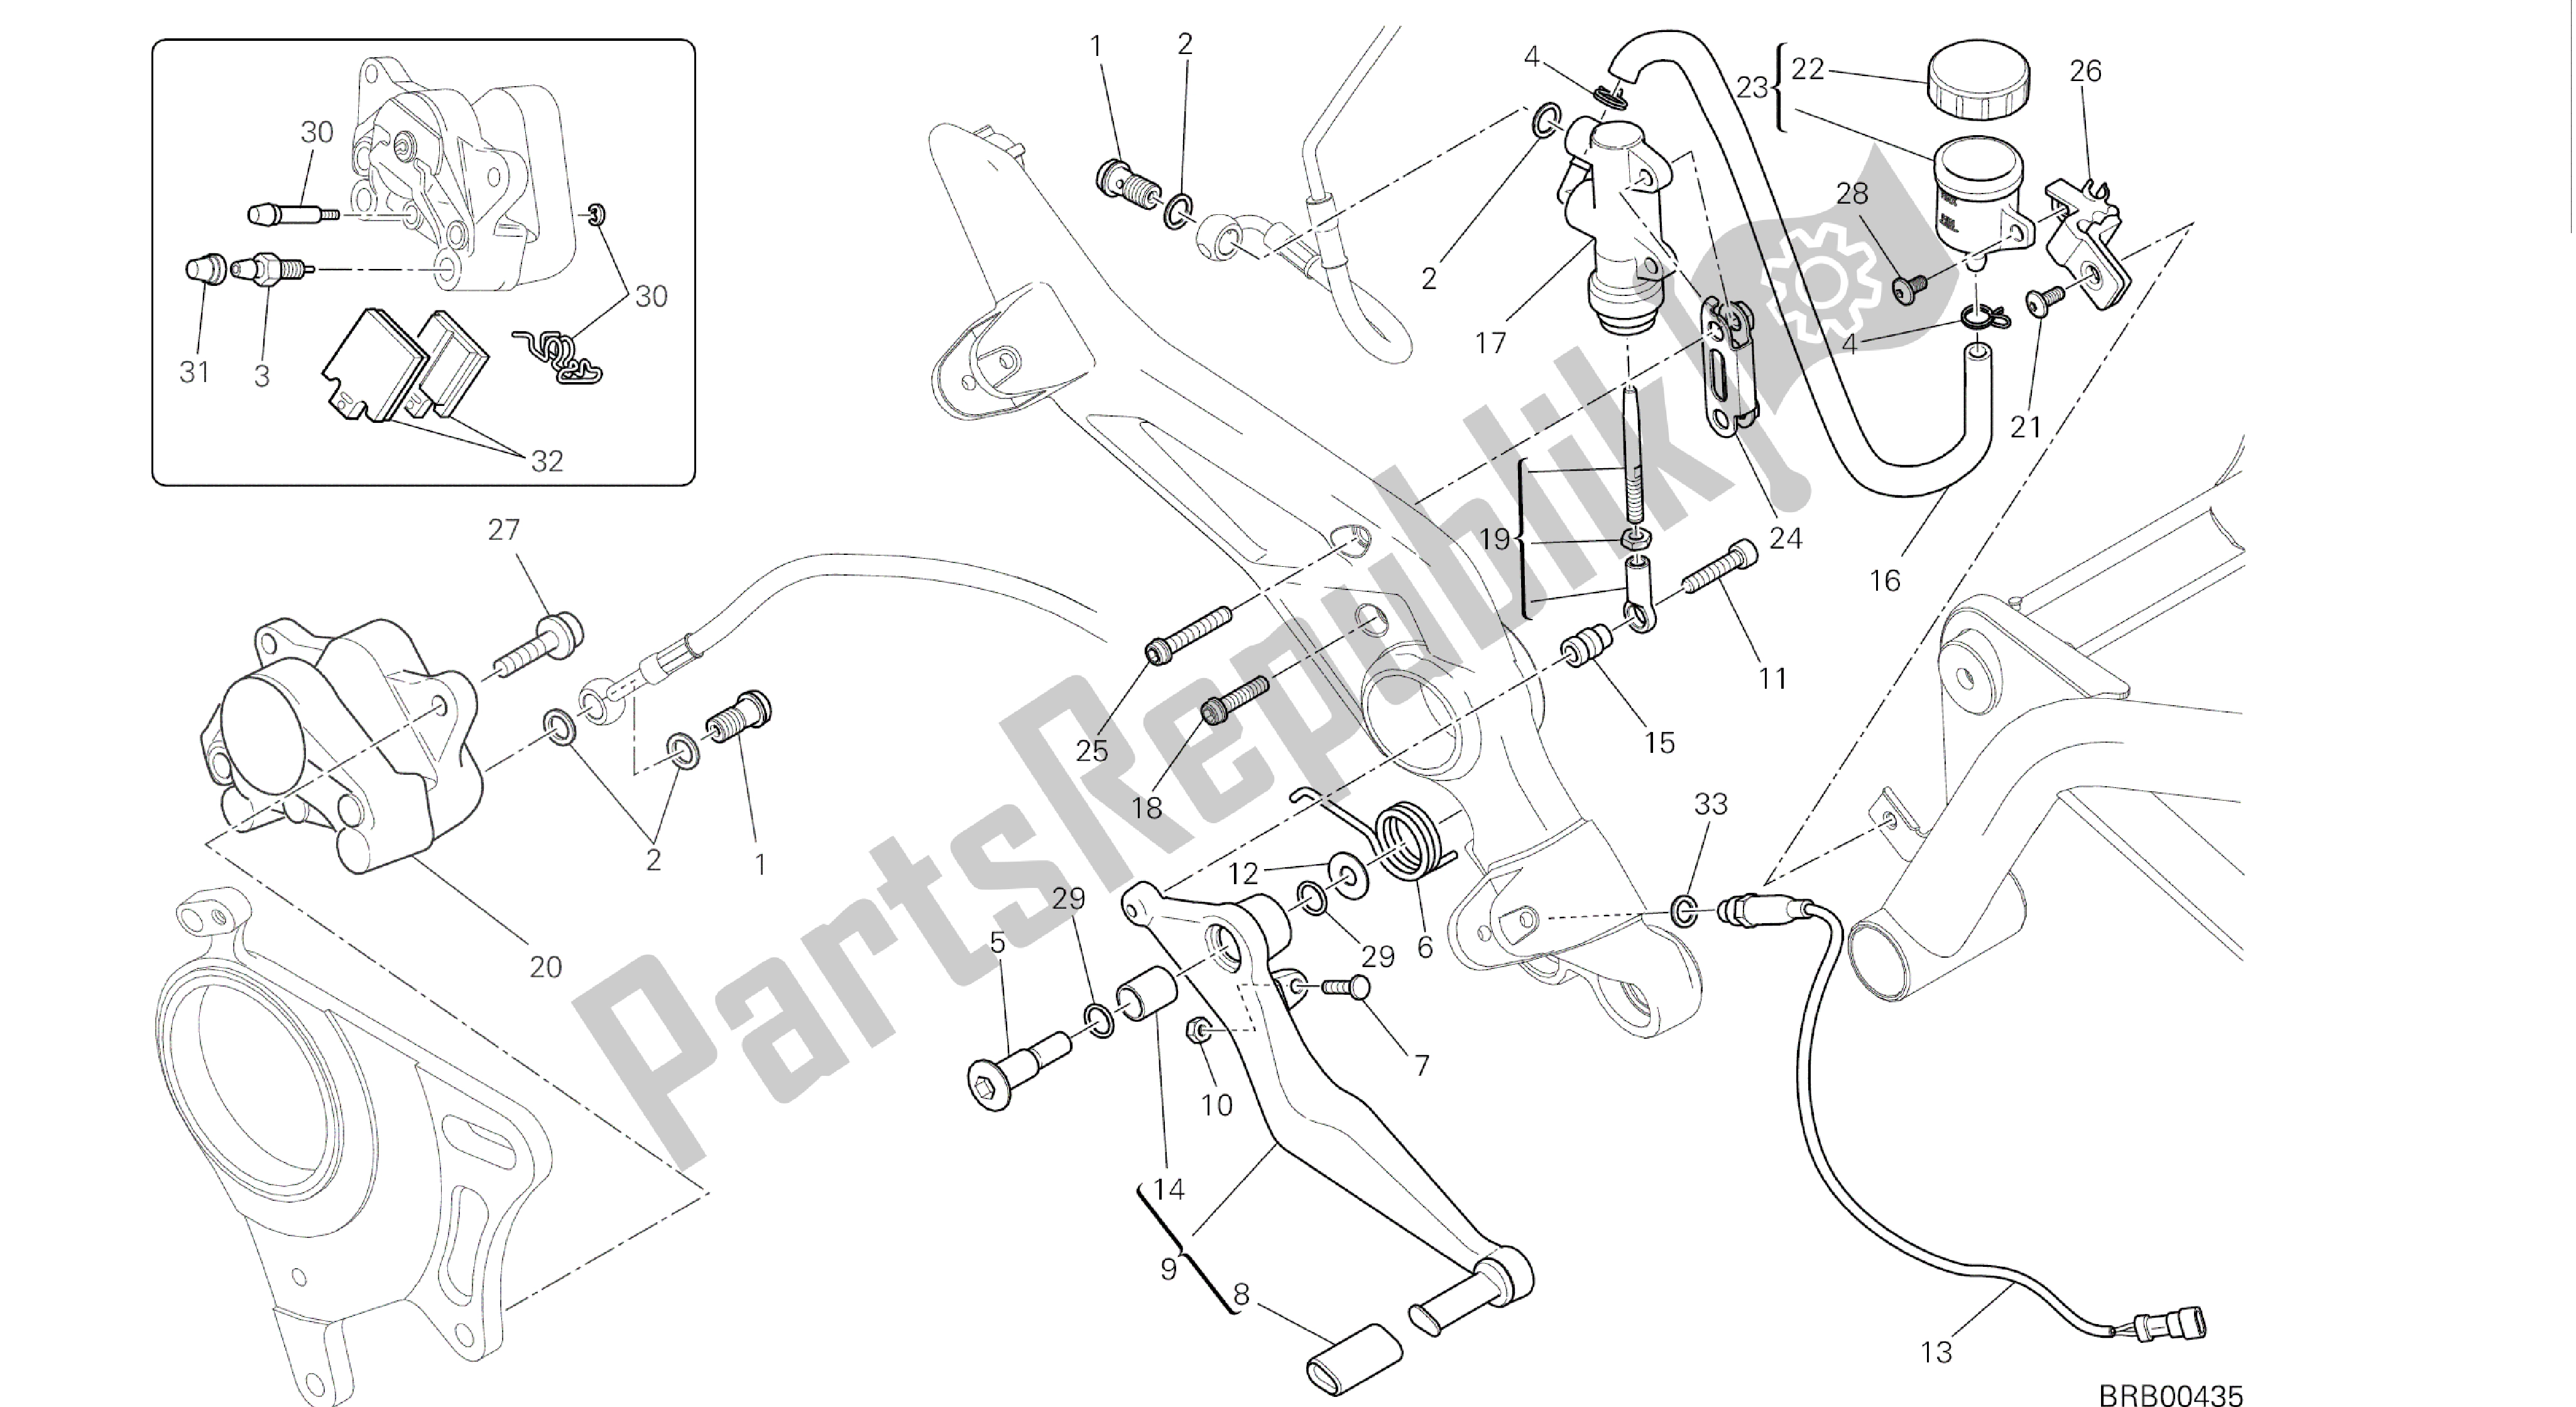 Toutes les pièces pour le Dessin 025 - Système De Freinage Arrière [mod: Hym-sp; Xst: Aus, Eur, Fra, Jap] Cadre De Groupe du Ducati Hypermotard SP 821 2015